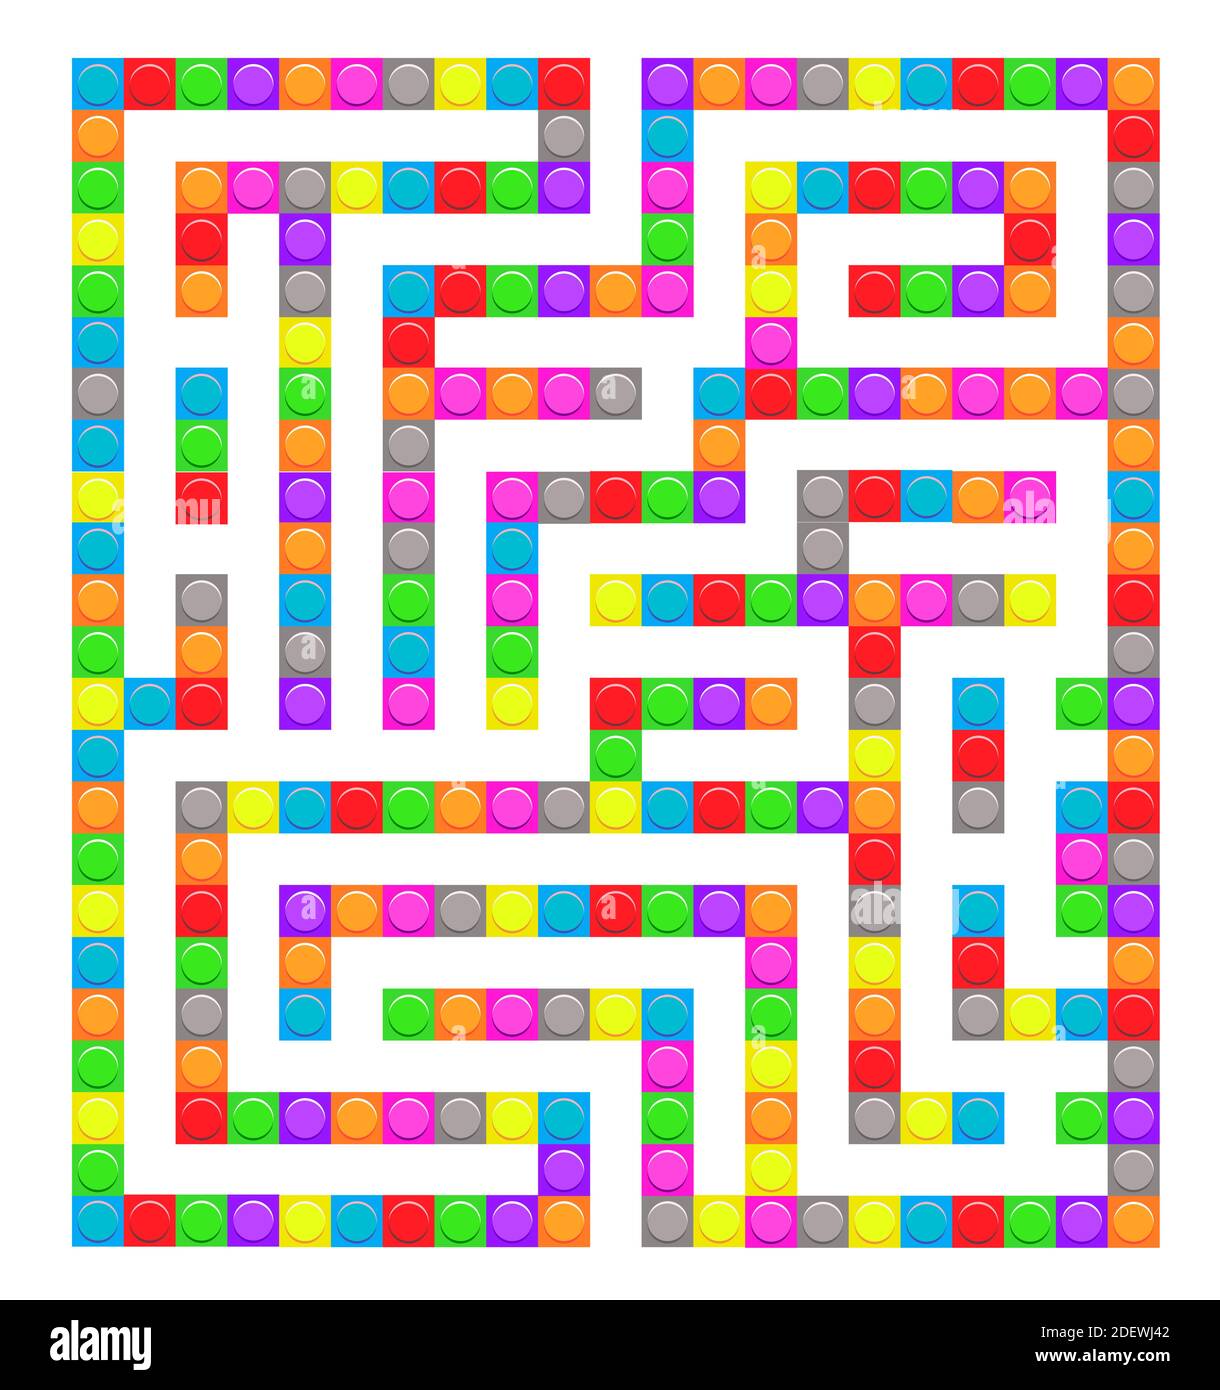 Square Labyrinth Ziegel Spielzeug Labyrinth Spiel für Kinder. Rätsel der  Labyrinthlogik. Ein Eingang und ein richtiger Weg. Vektorgrafik flach  Stock-Vektorgrafik - Alamy